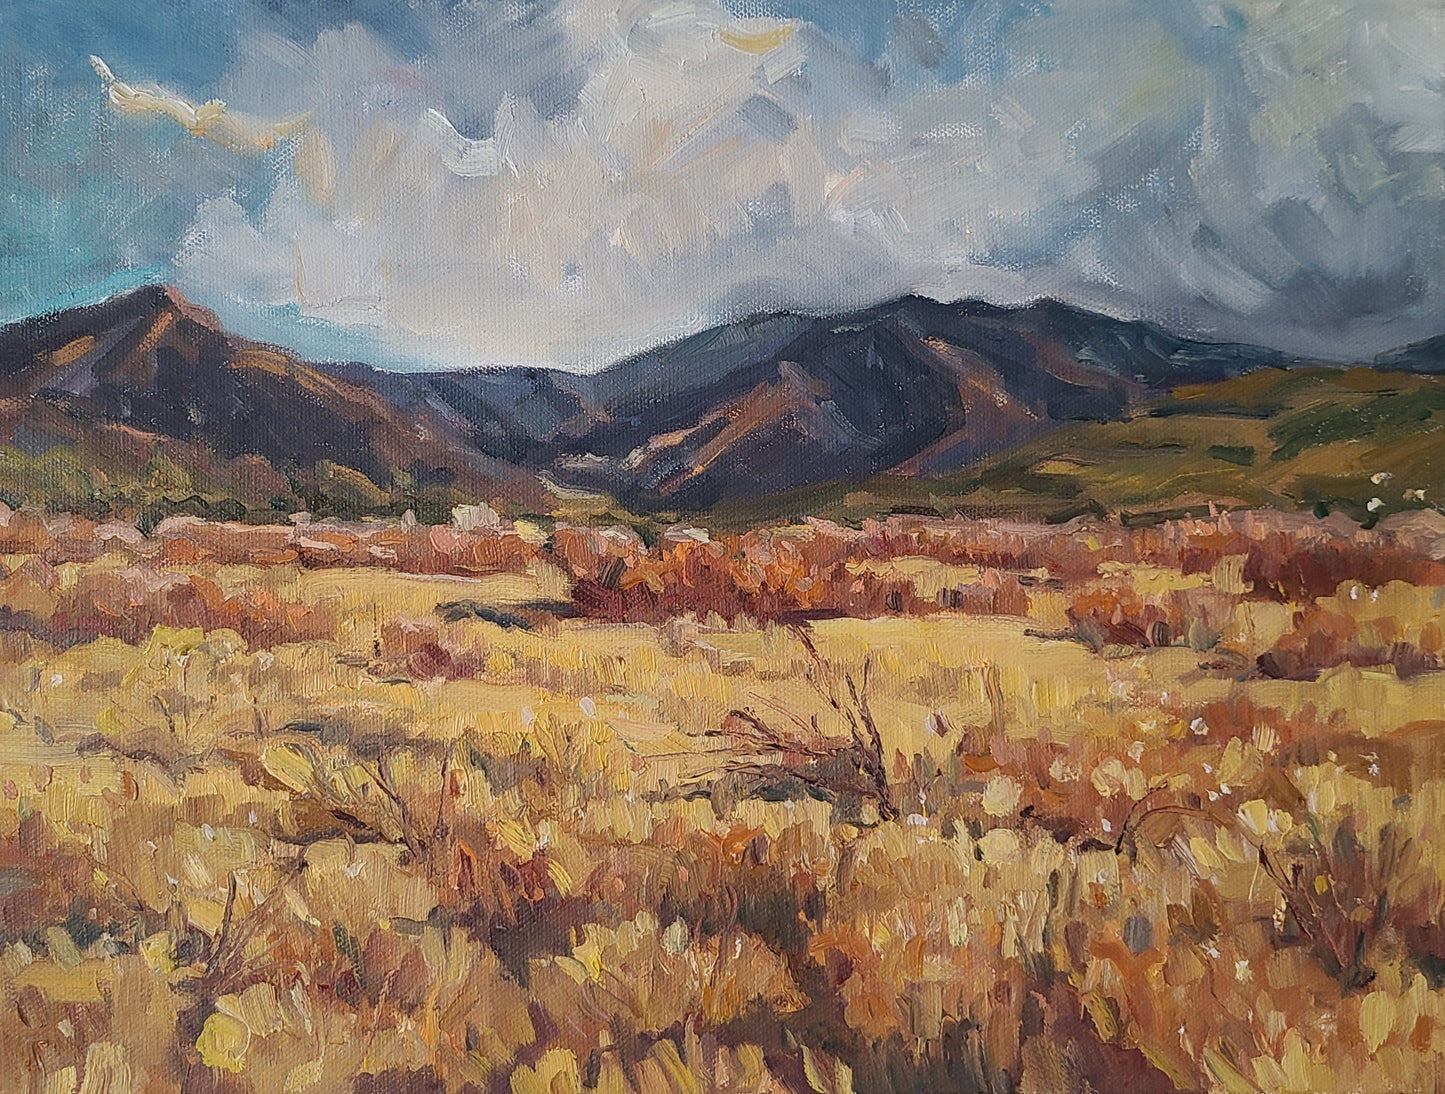 "Golden Valley" by Ioana Villatoro. Oil on canvas. 12"x16". Original.